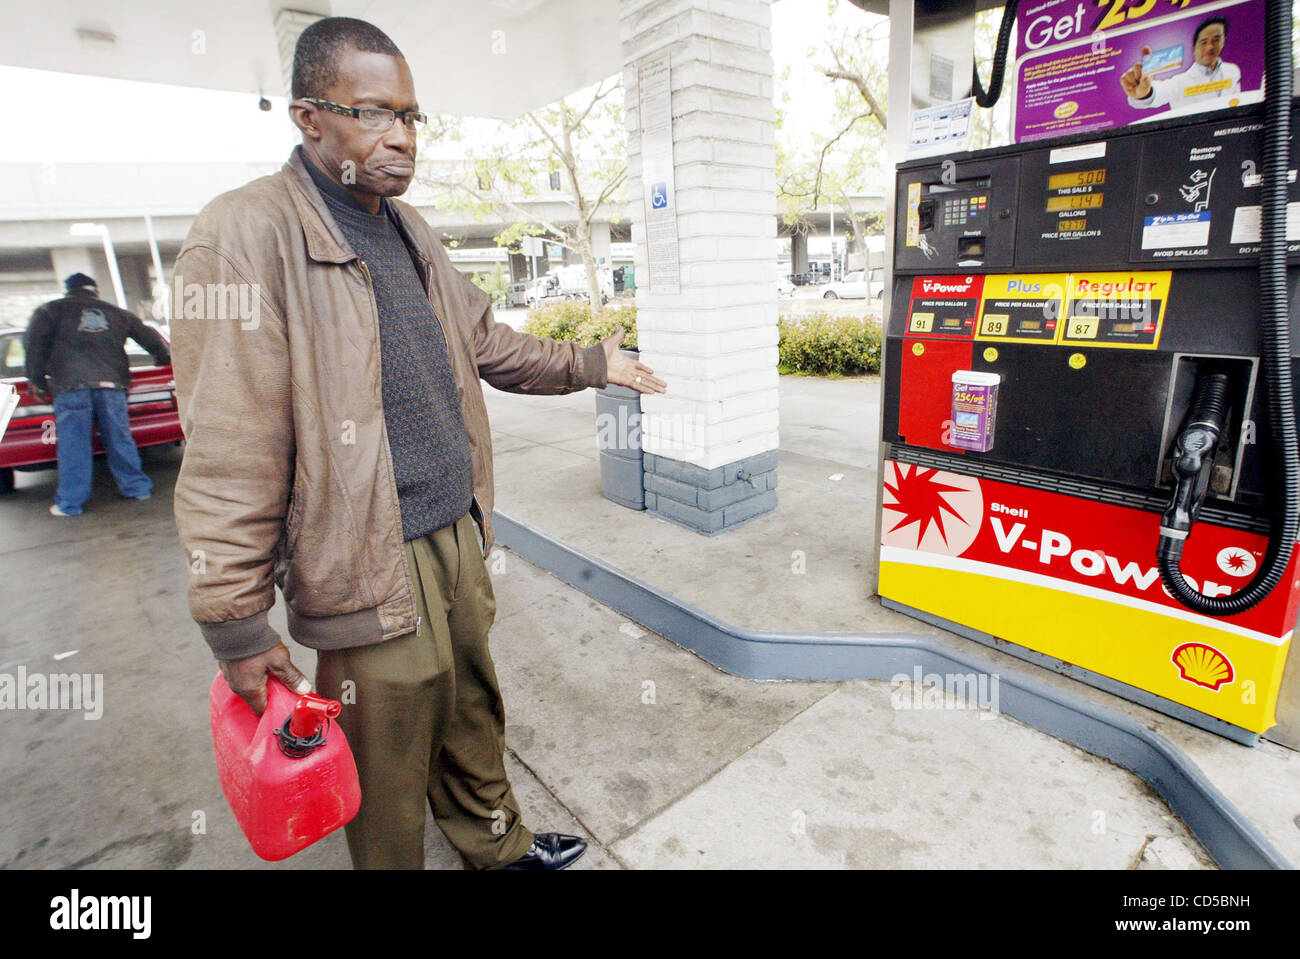 Les prix du gaz sont bien plus de quatre dollars à la station Shell sur Market St. à la 6e Rue Ouest à Oakland. Geral Albert de Oakland a manqué de gaz naturel en raison d'une défaillance de gage et payé 5 $ pour 1,14 gallons d'essence à mettre dans son conteneur après obtenir un trajet à partir d'un passant. (Laura A. Oda/l'Oakl Banque D'Images